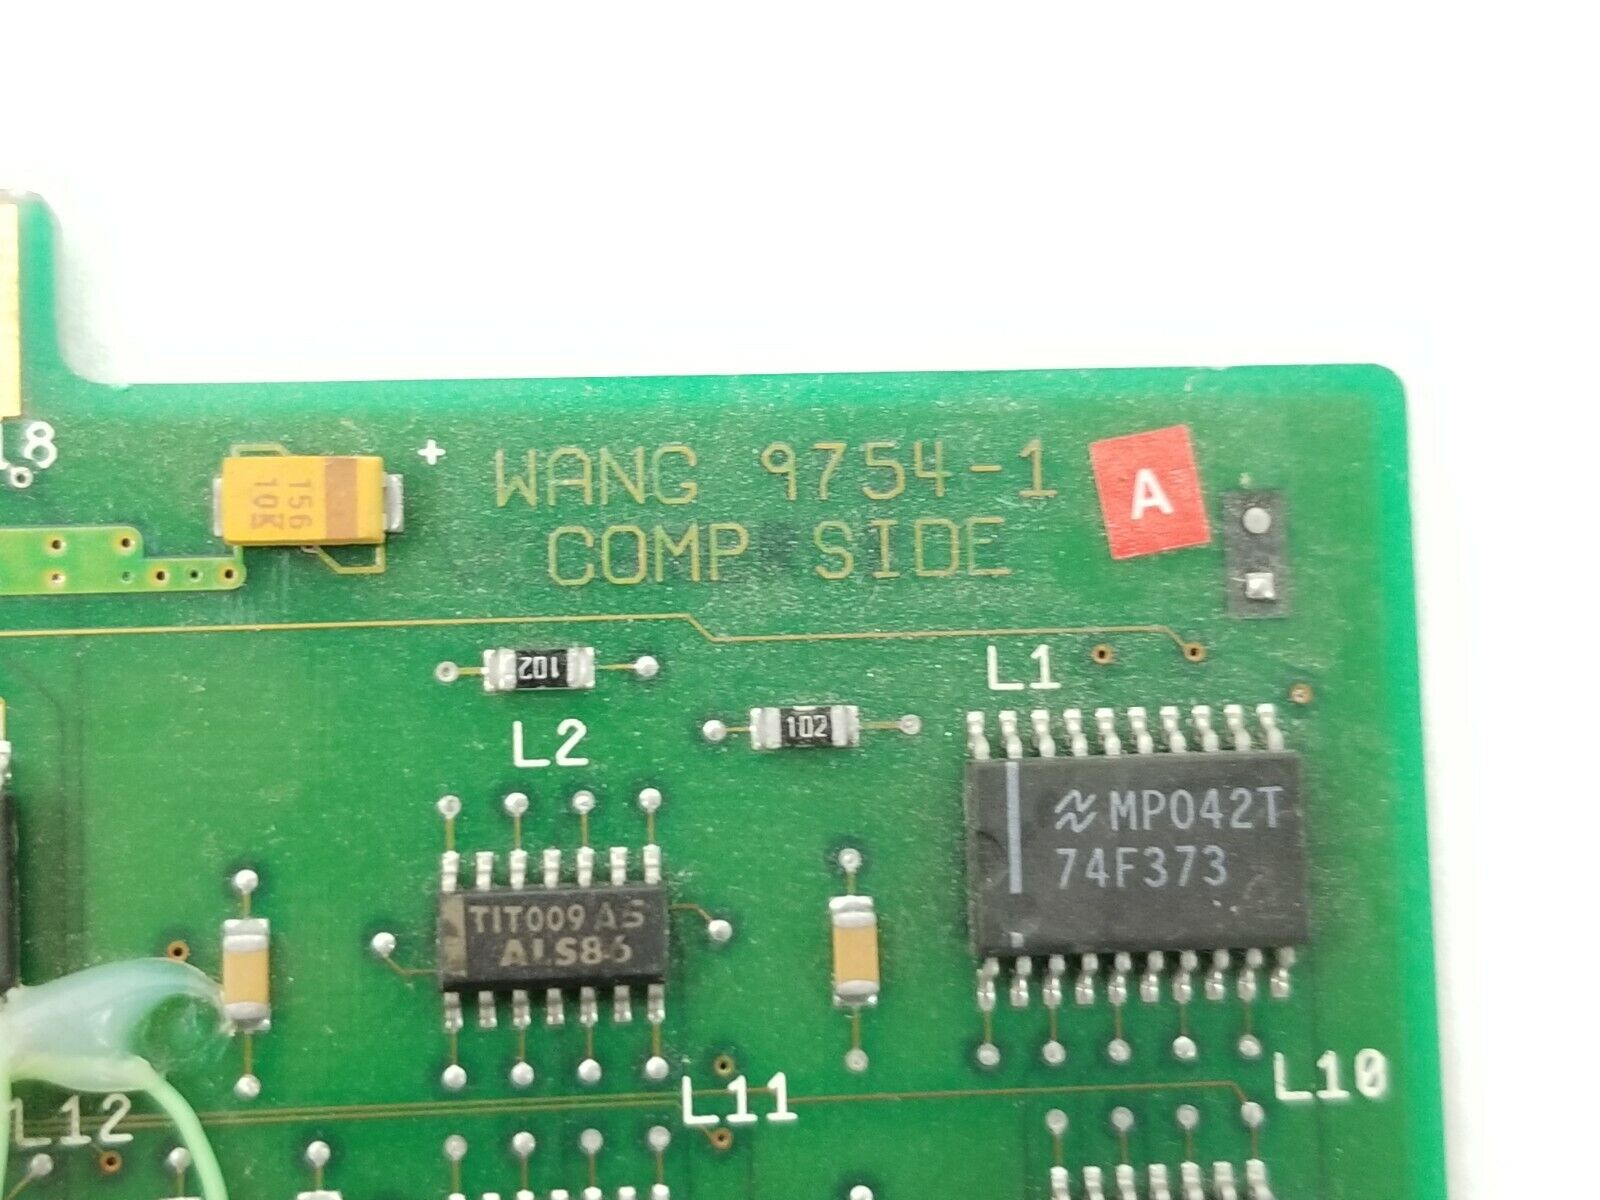 Wang Dual Coax Network Card 9754-1 16-bit ISA Card Vintage Computer